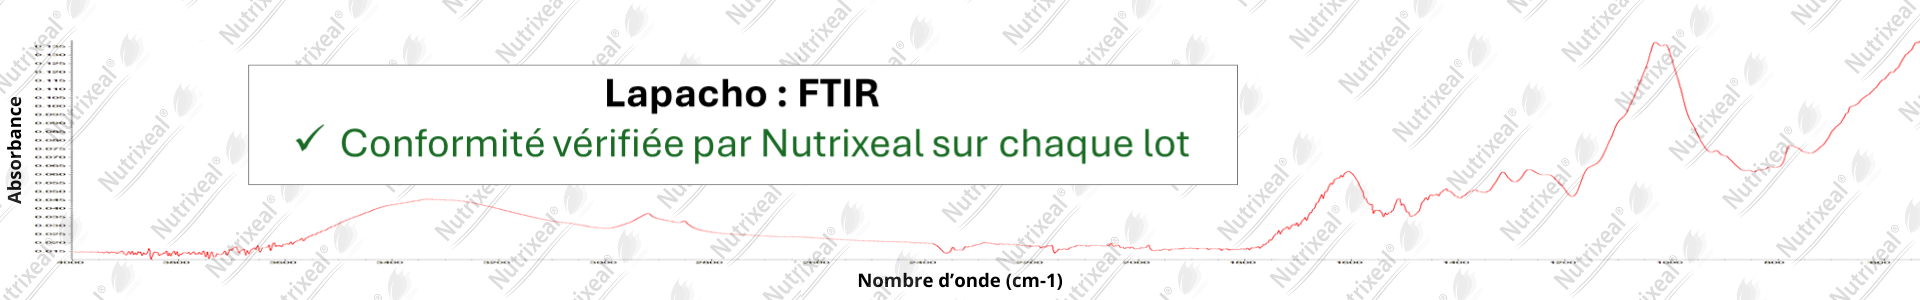 Spectre IR du Lapacho contrôle analytique interne de Nutrixeal